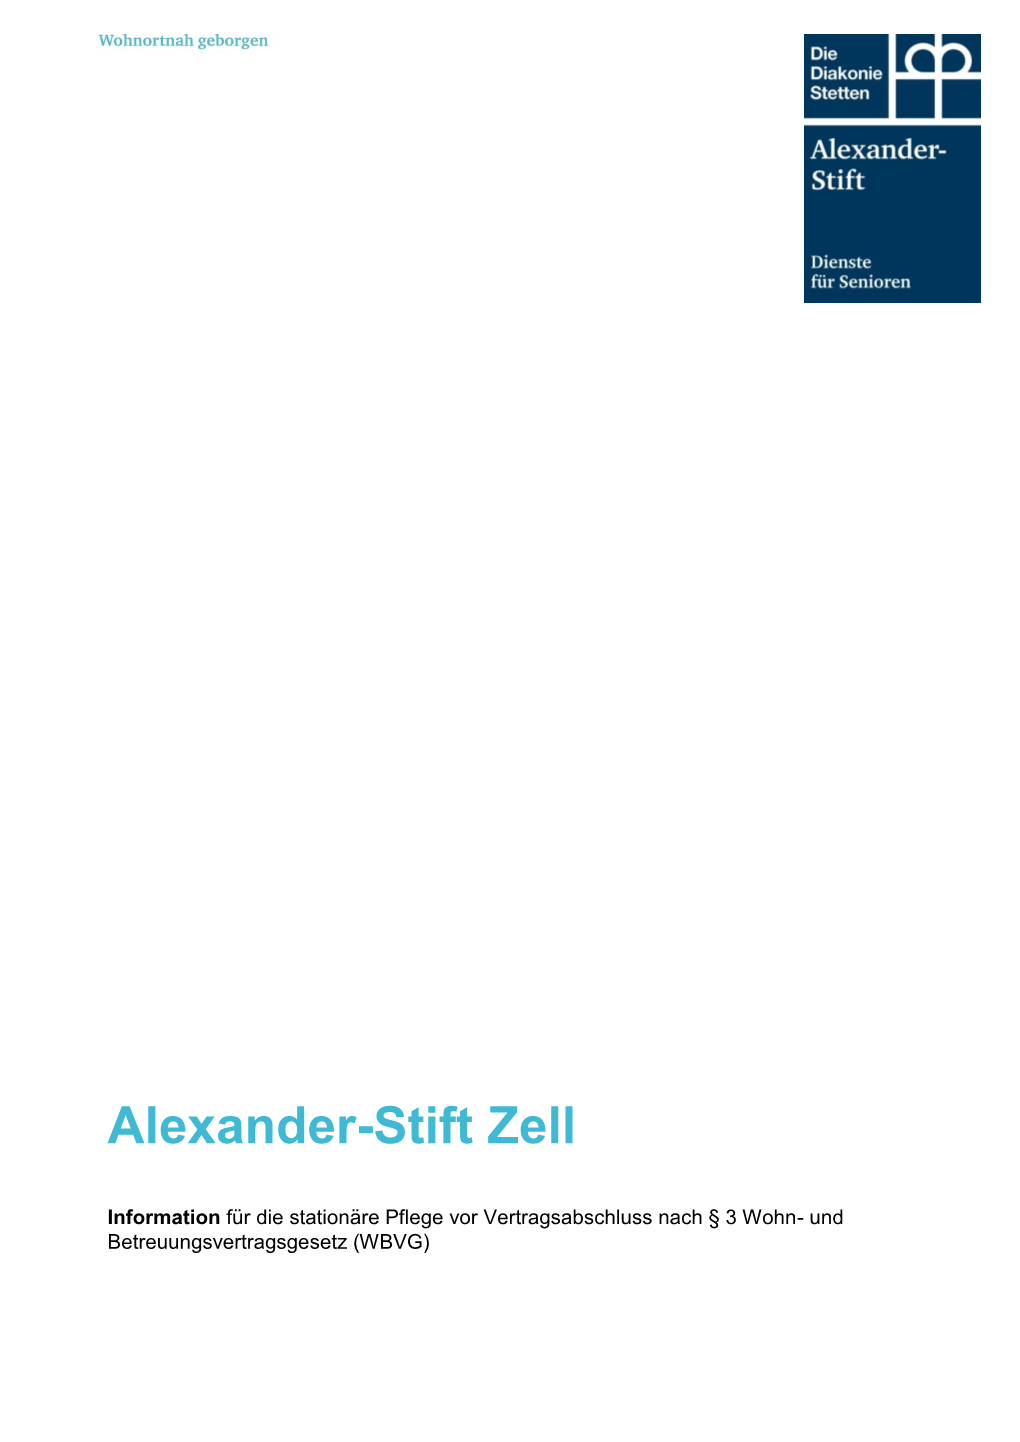 Alexander-Stift Zell